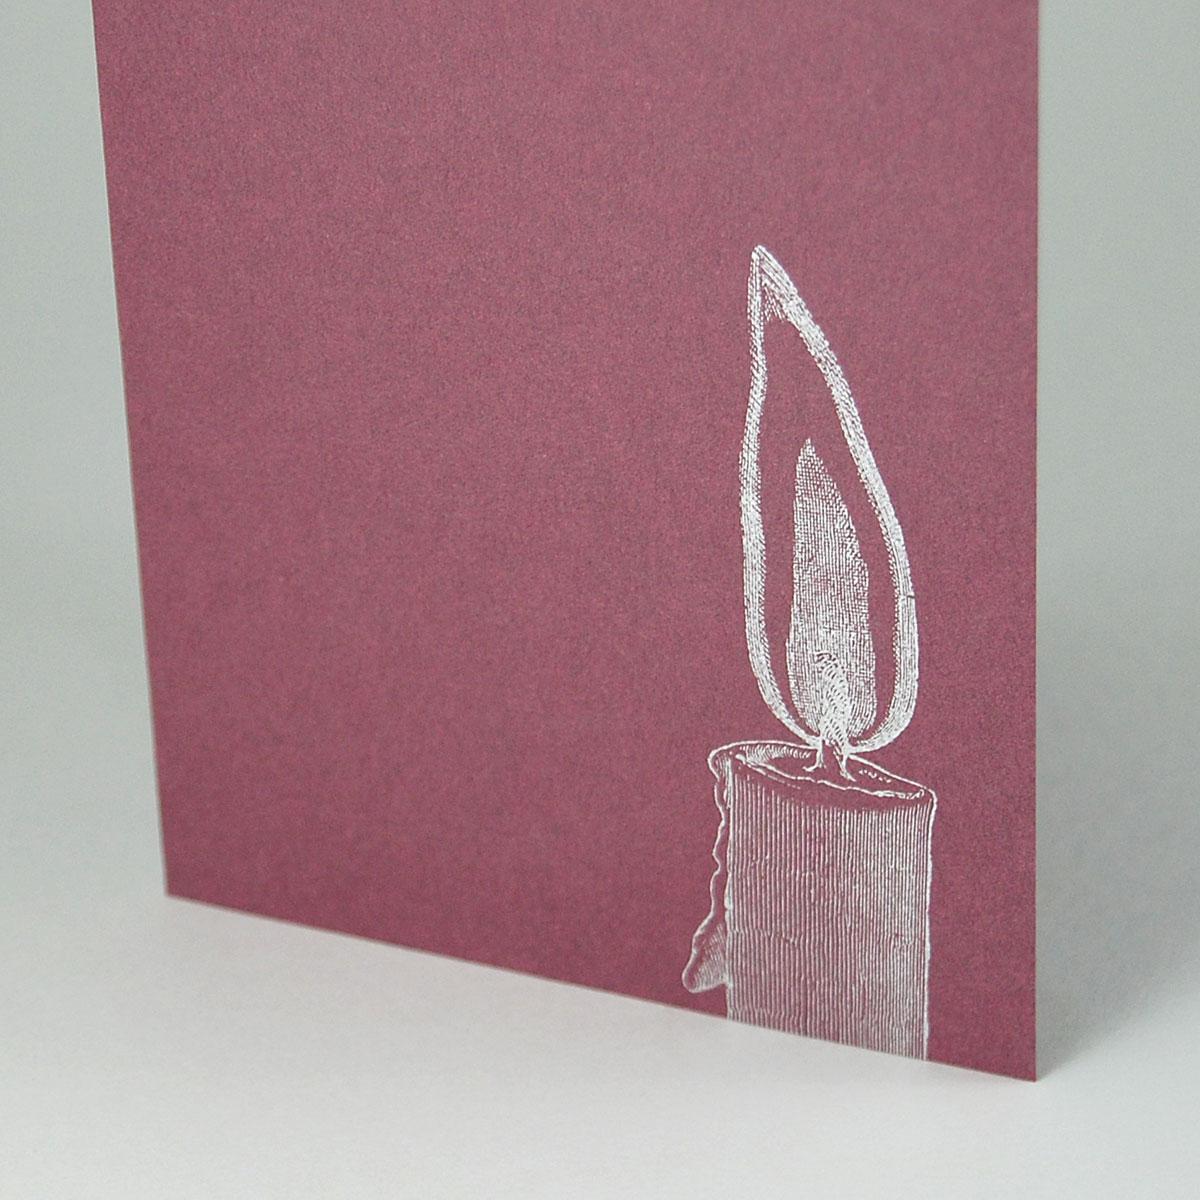 10 Trauerkarten mit Umschlag: Kerze